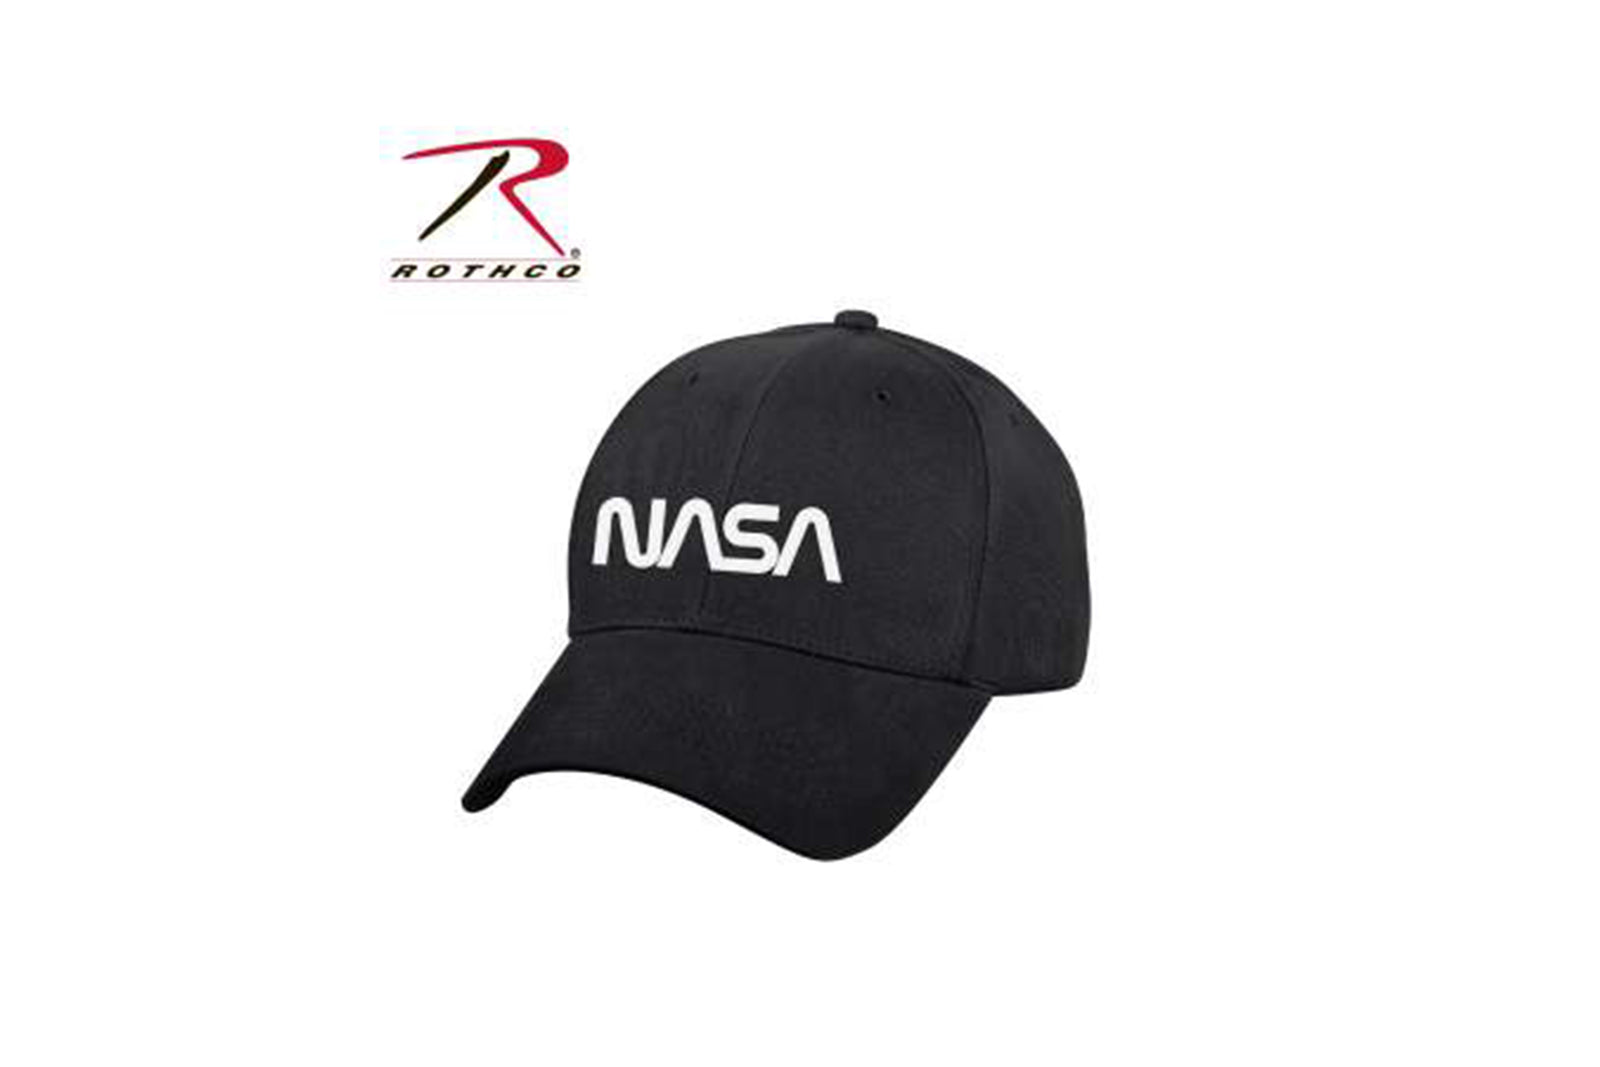 Rothco NASA hat